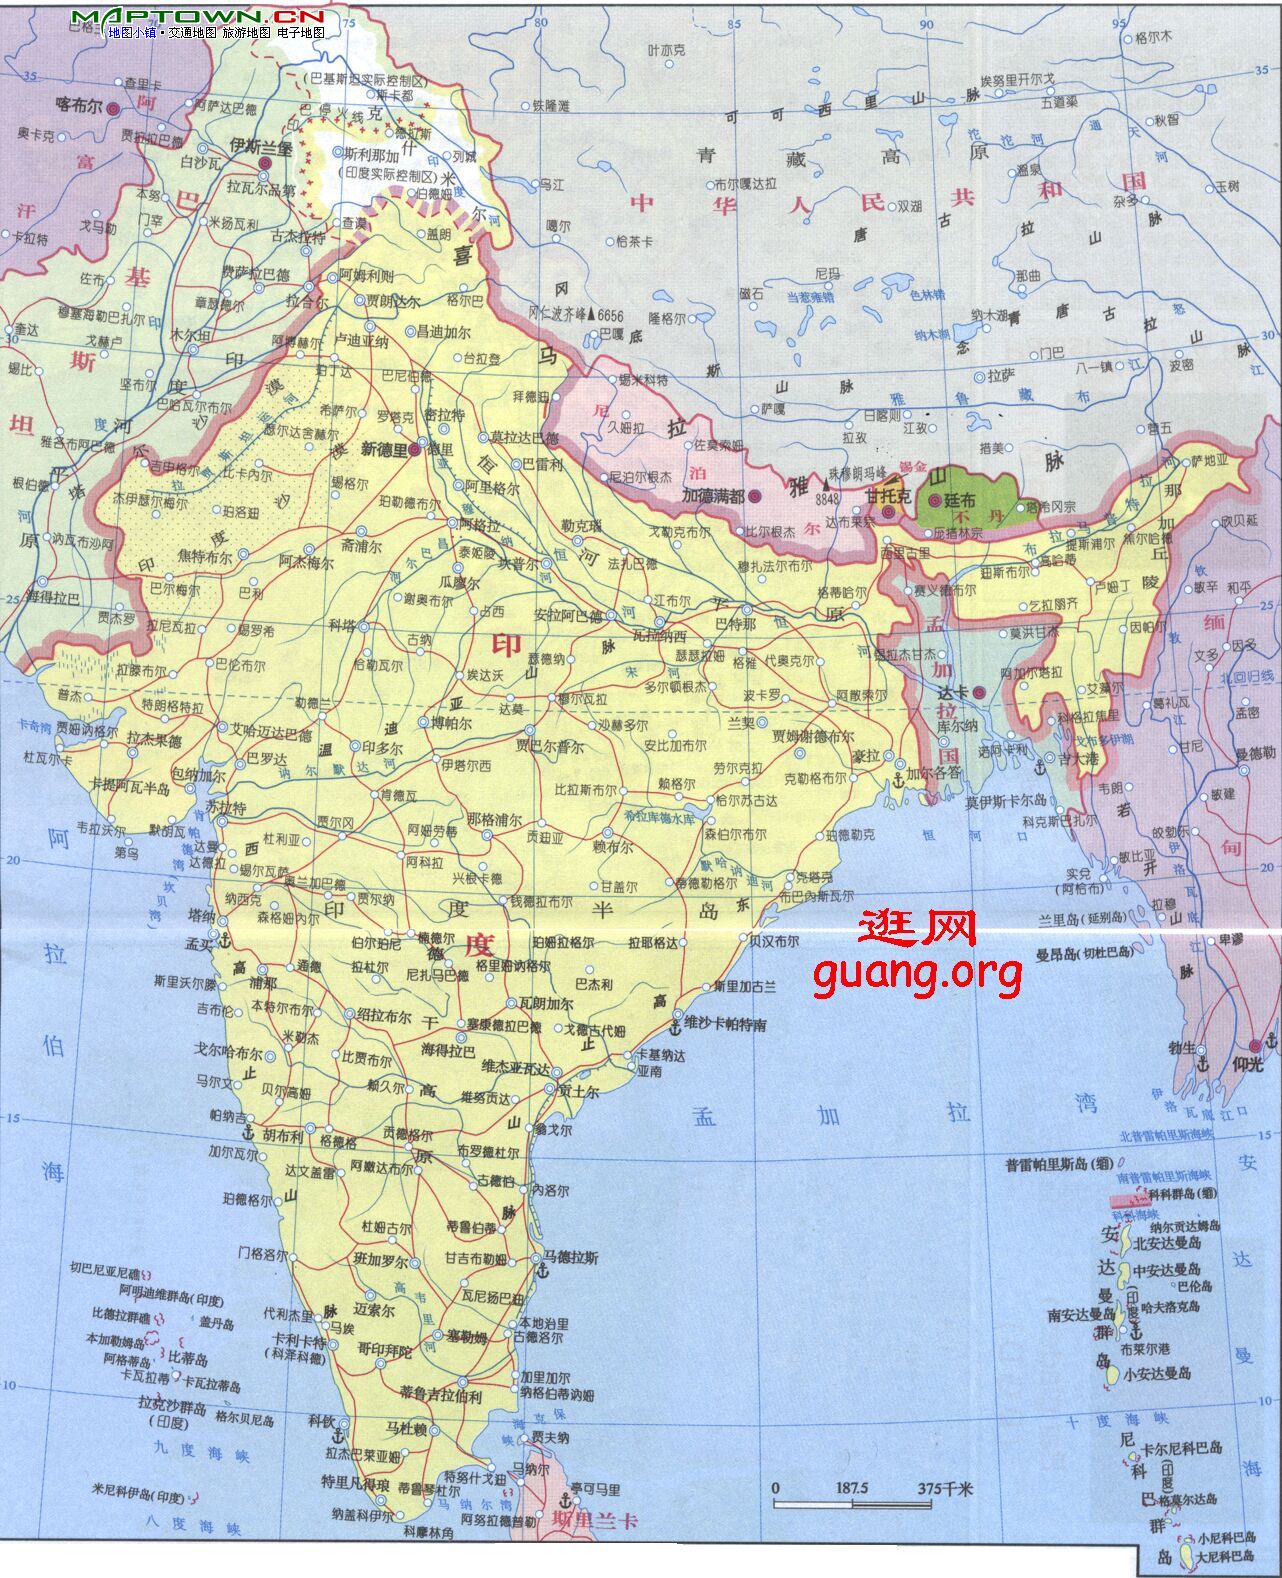 印度地圖